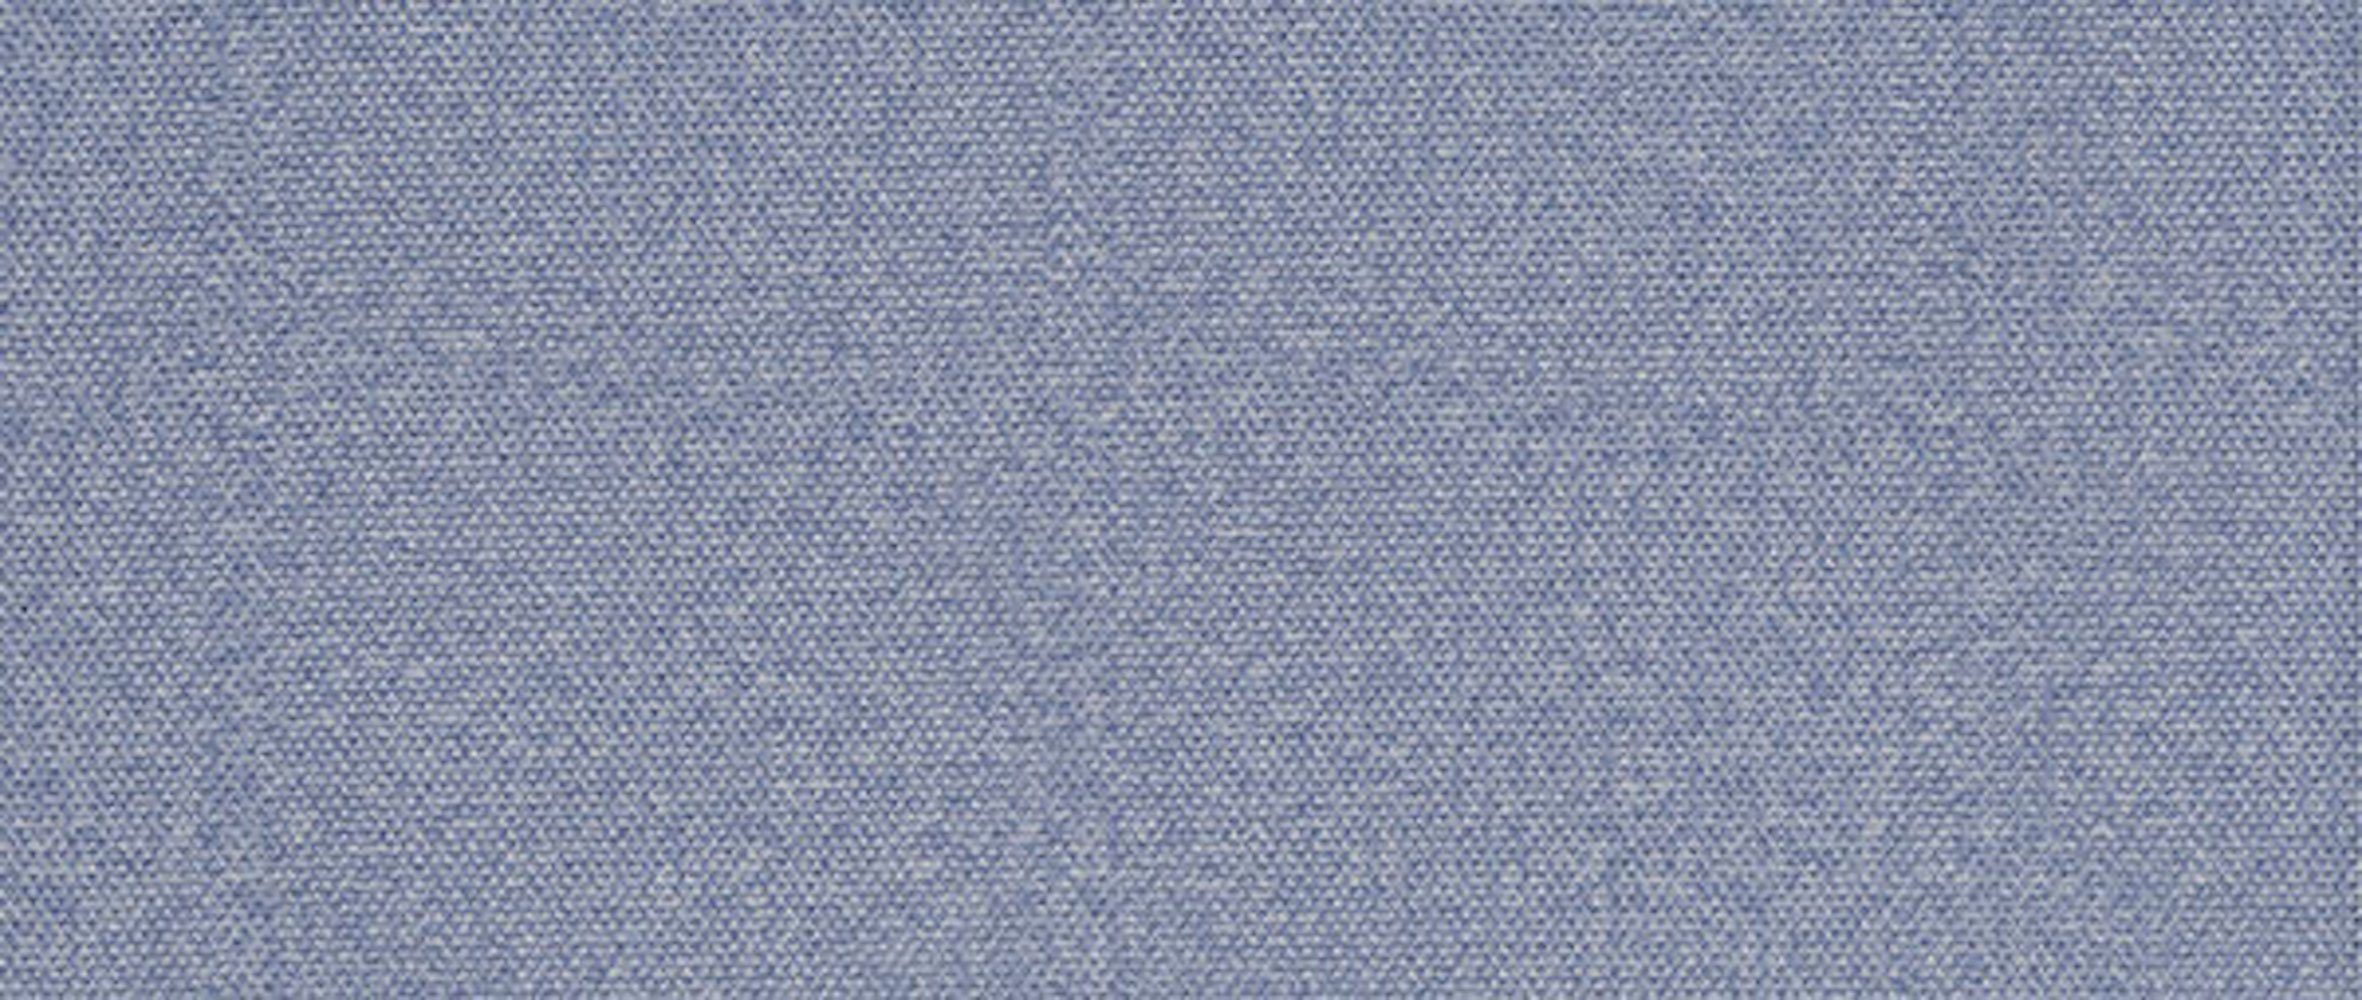 Sessel, Polstergarnitur wählbar 3-tlg, hellblau 1 2 Feldmann-Wohnen Farbe Bettkasten & und Schlaffunktion Toronto, Sofa